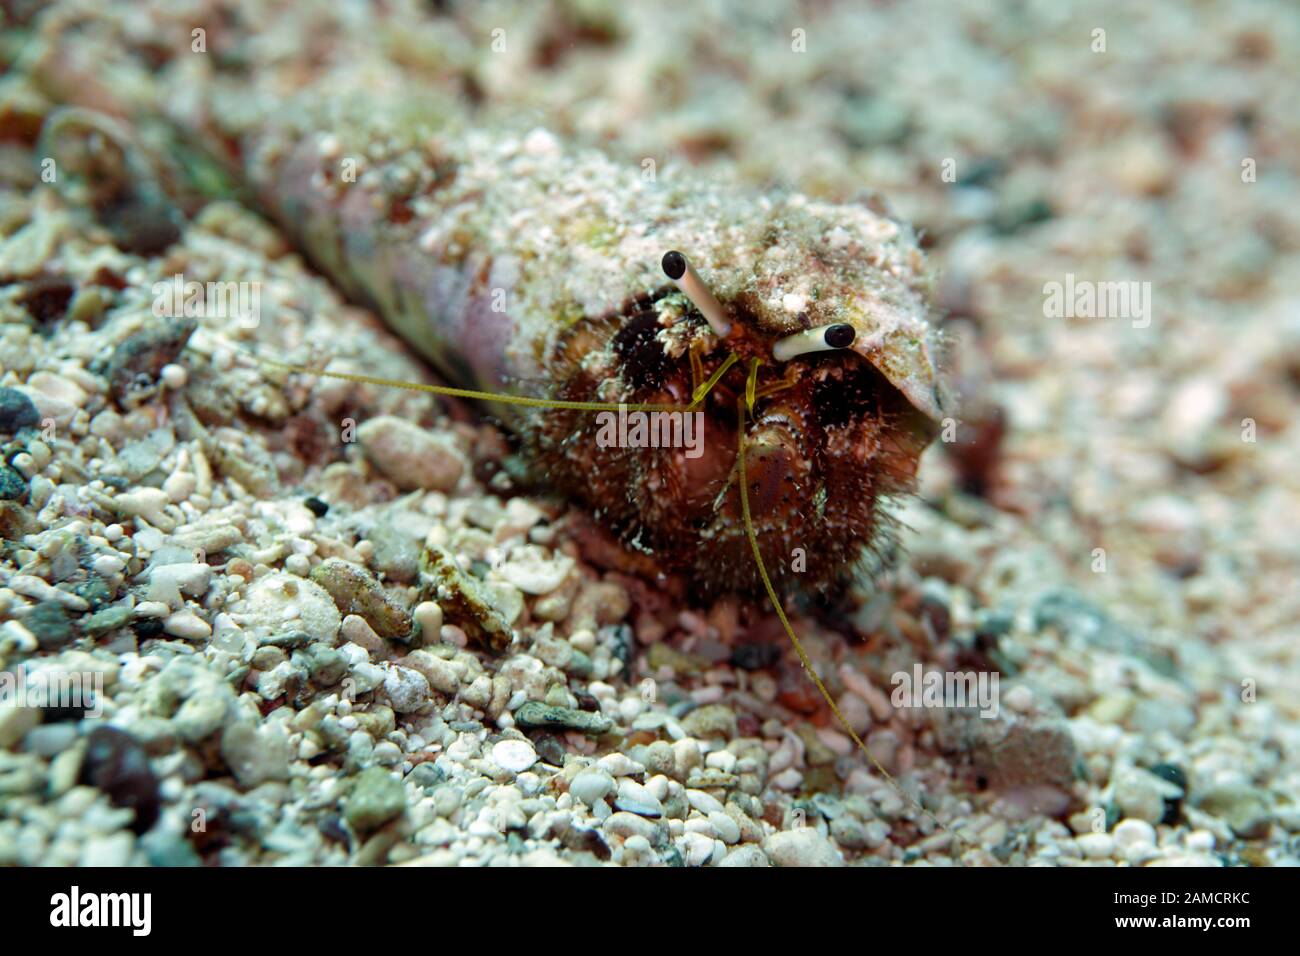 Einsiedlerkrebs in einer spiralförmigen Muschel Stock Photo